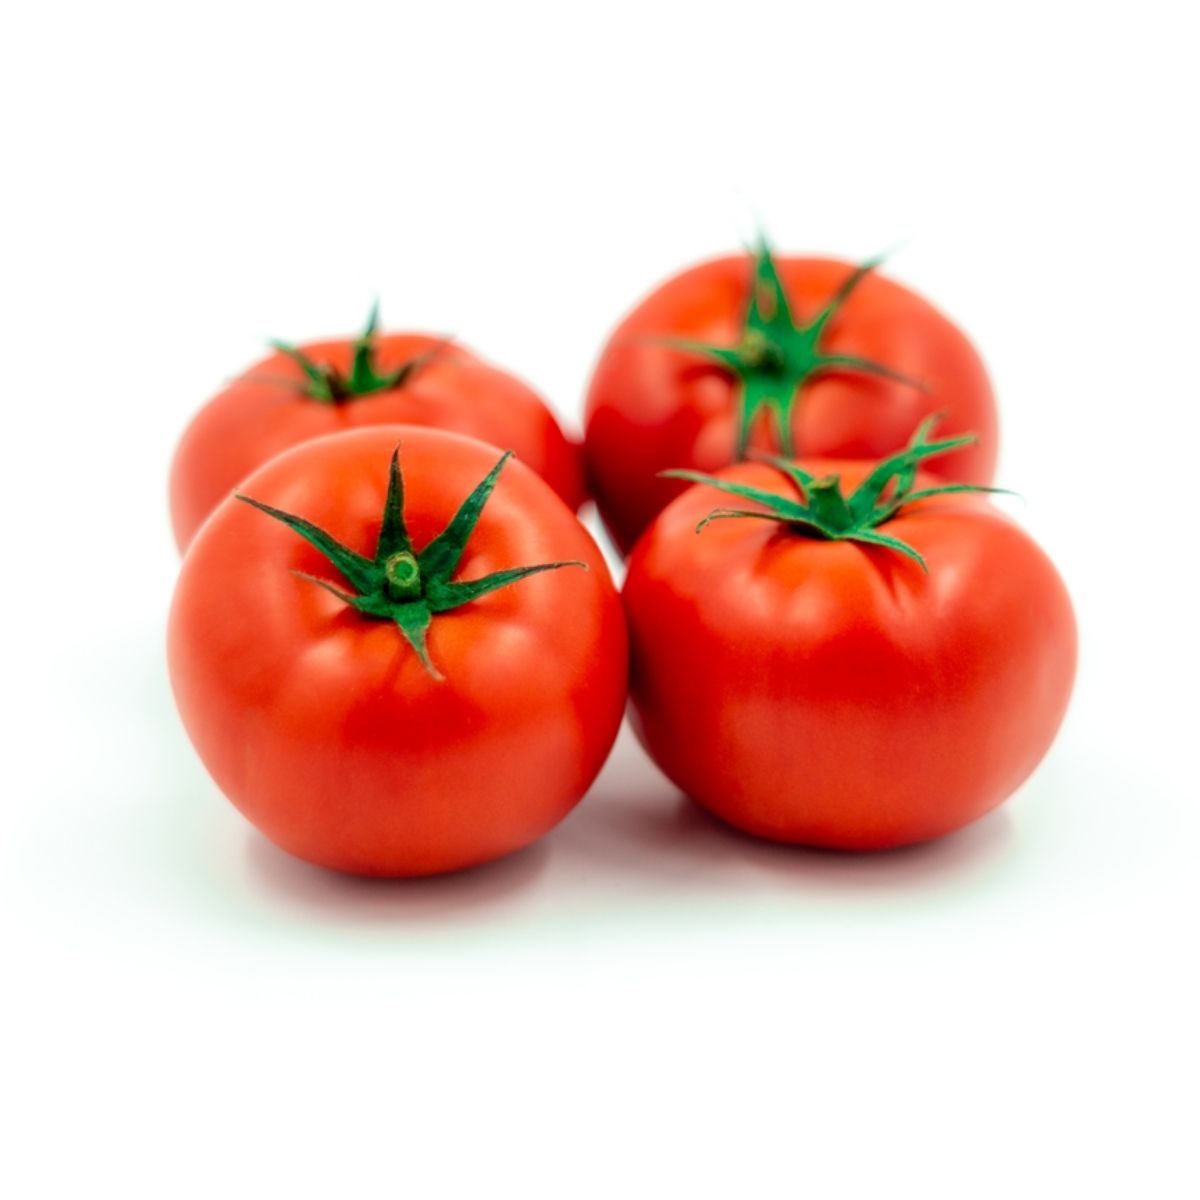 Tomate - Seminte de tomate AZARBE F1, 500 seminte, YUKSEL, hectarul.ro